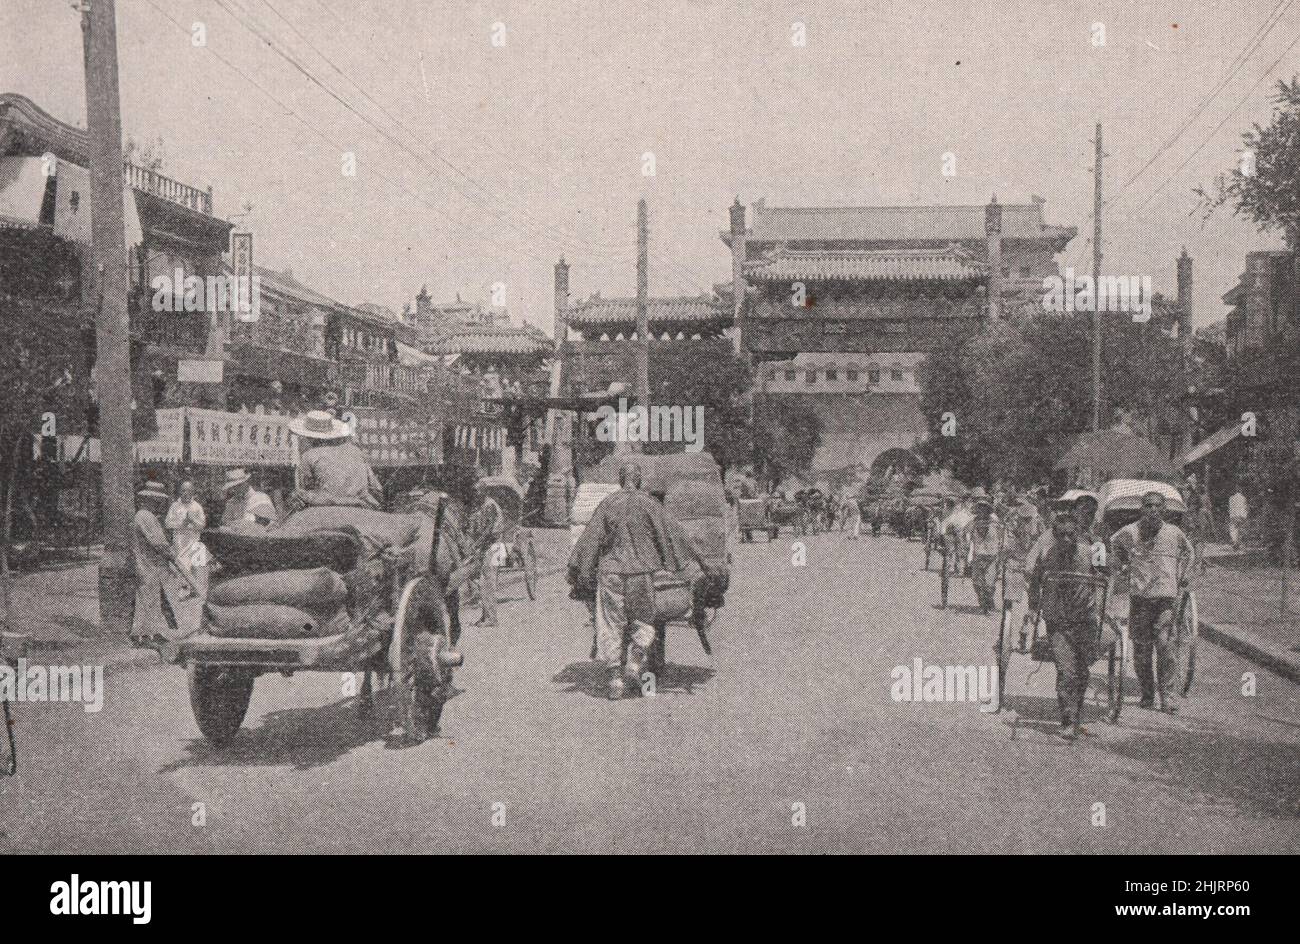 CH'ien men, l'une des dix portes de la ville de Tartar. Chine. Pékin (1923) Banque D'Images